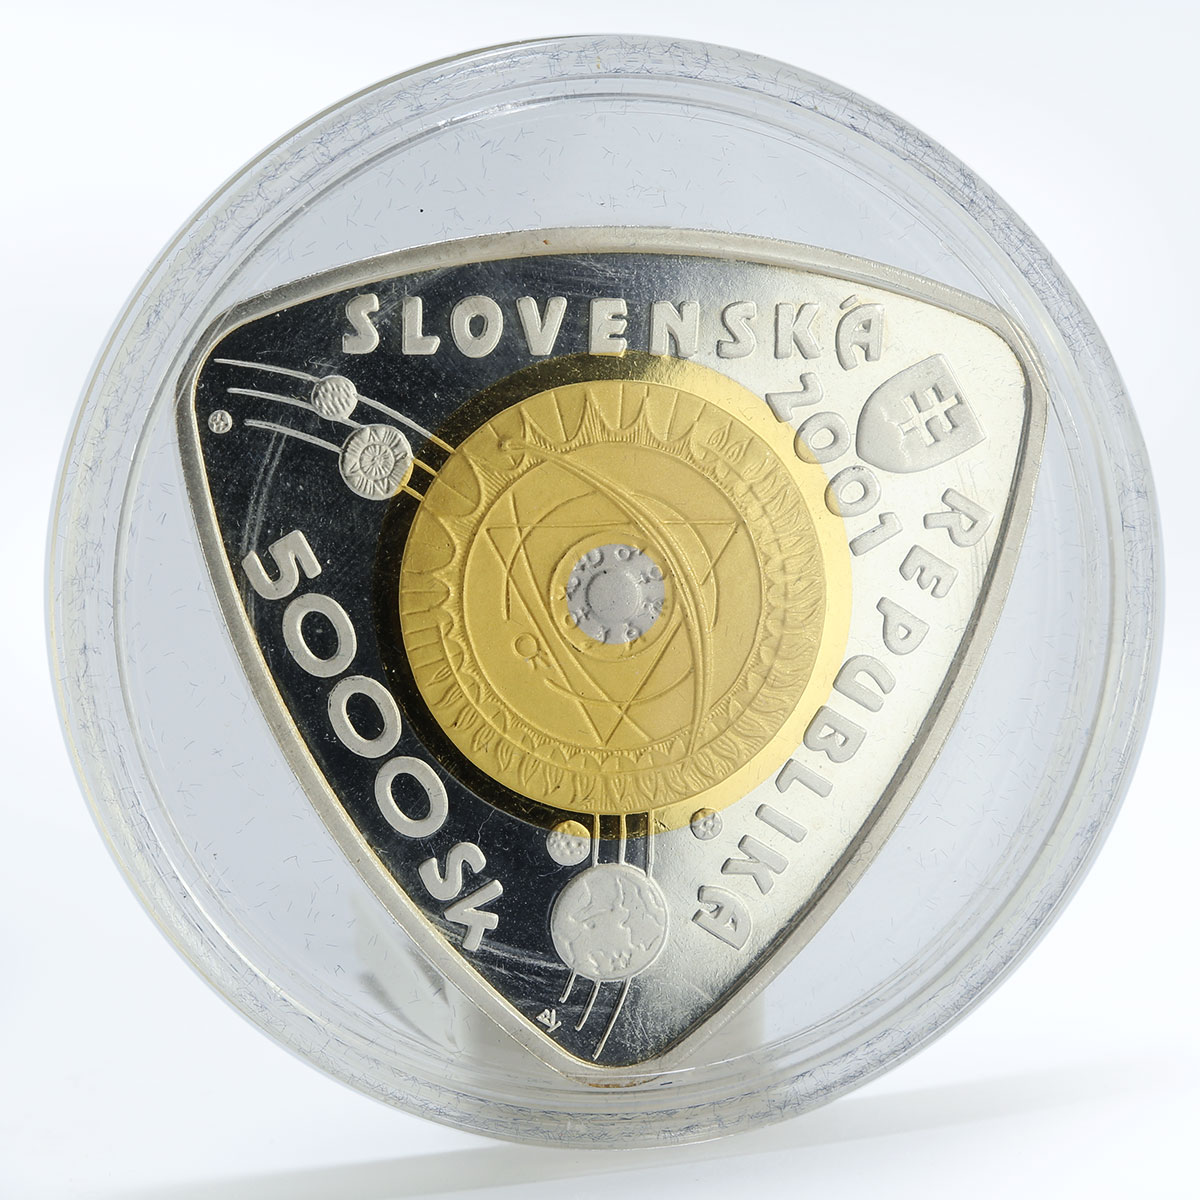 Slovakia 5000 korun Third Millennium proof silver coin 2001